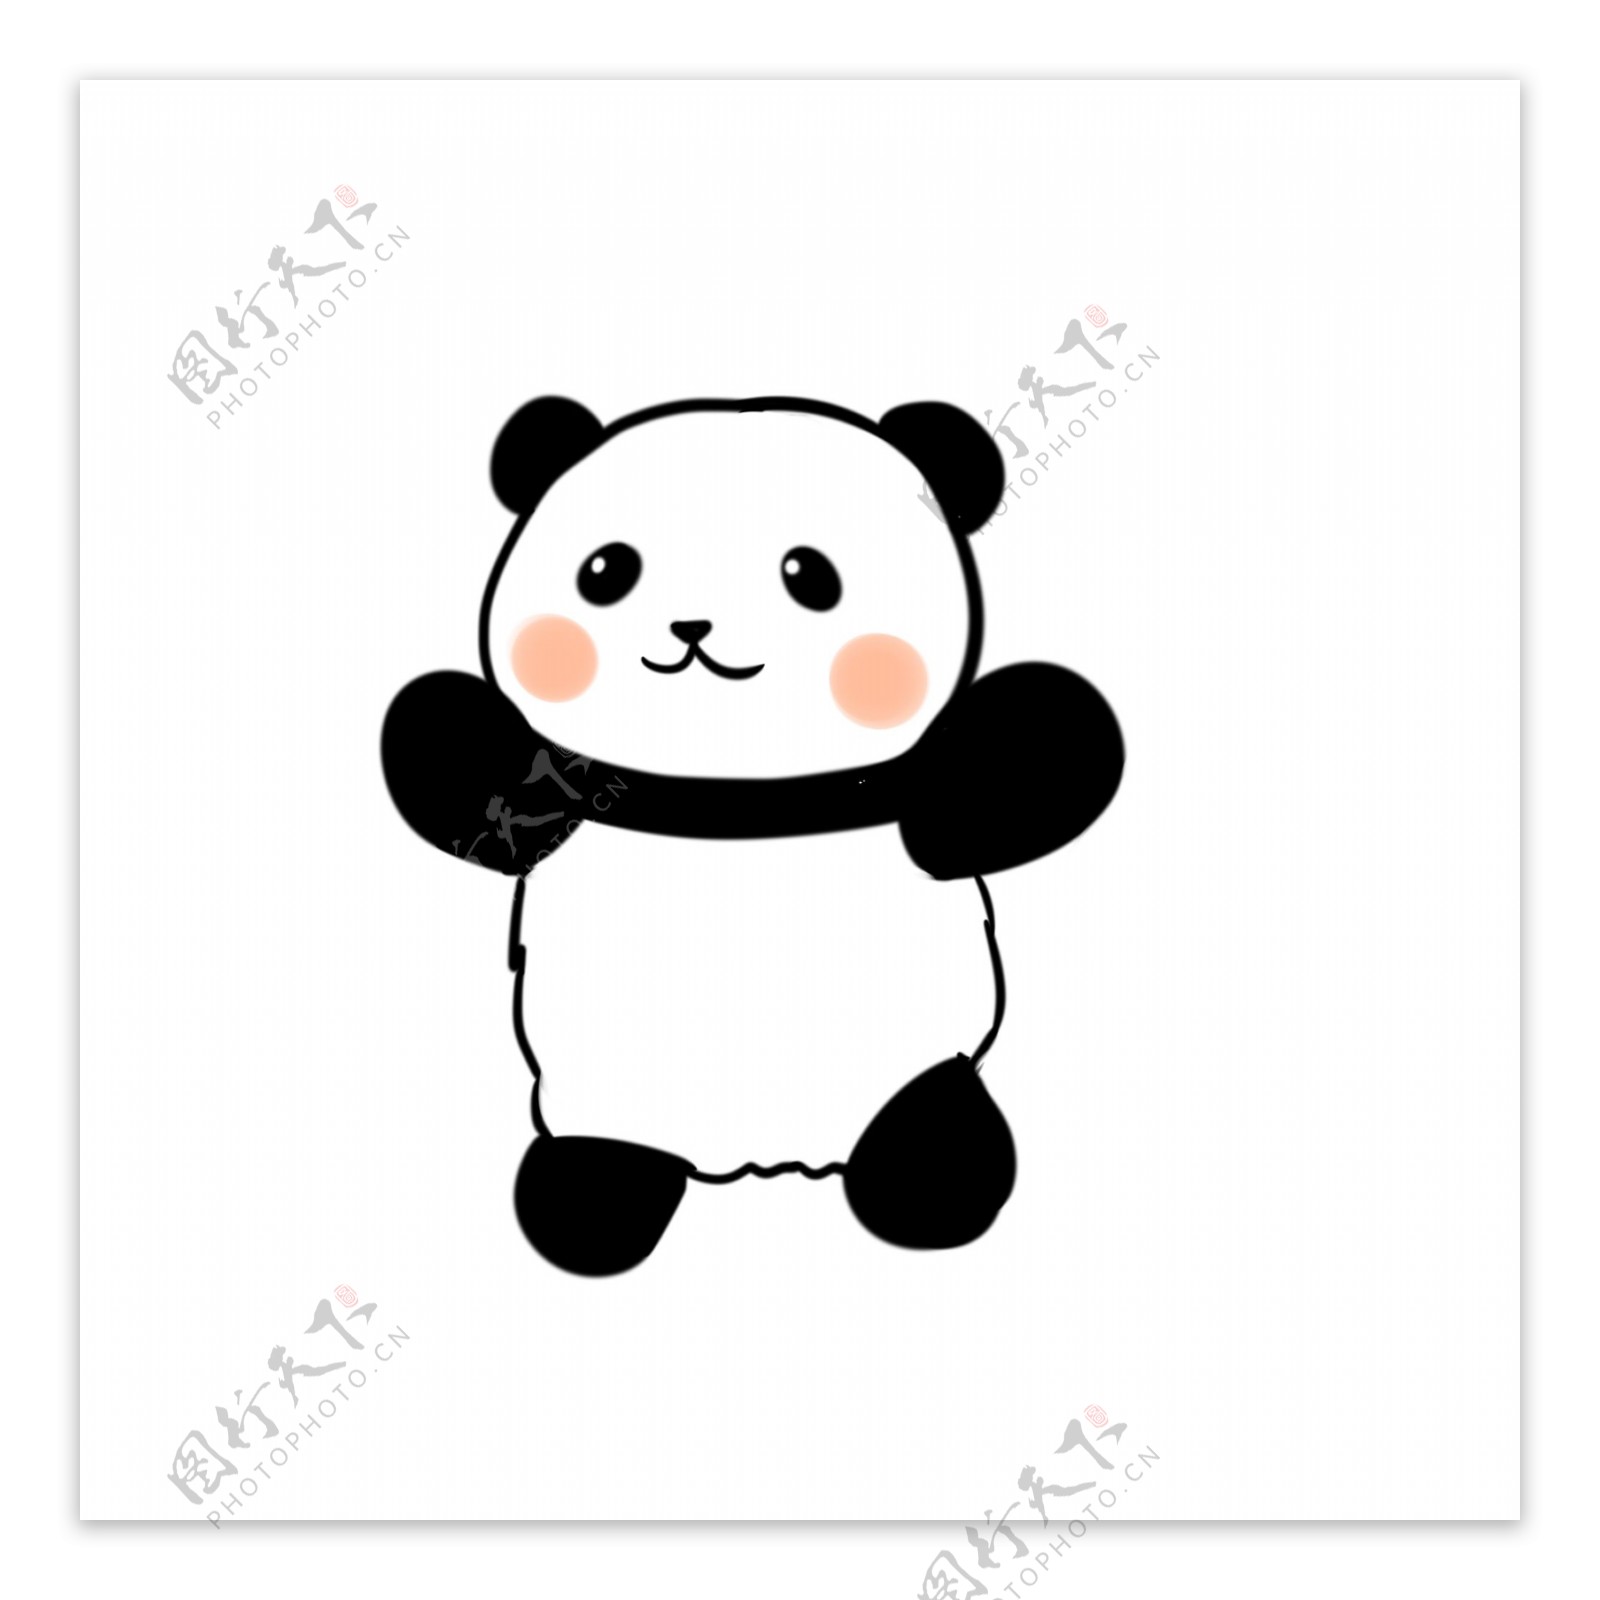 原创可爱熊猫表情包素材